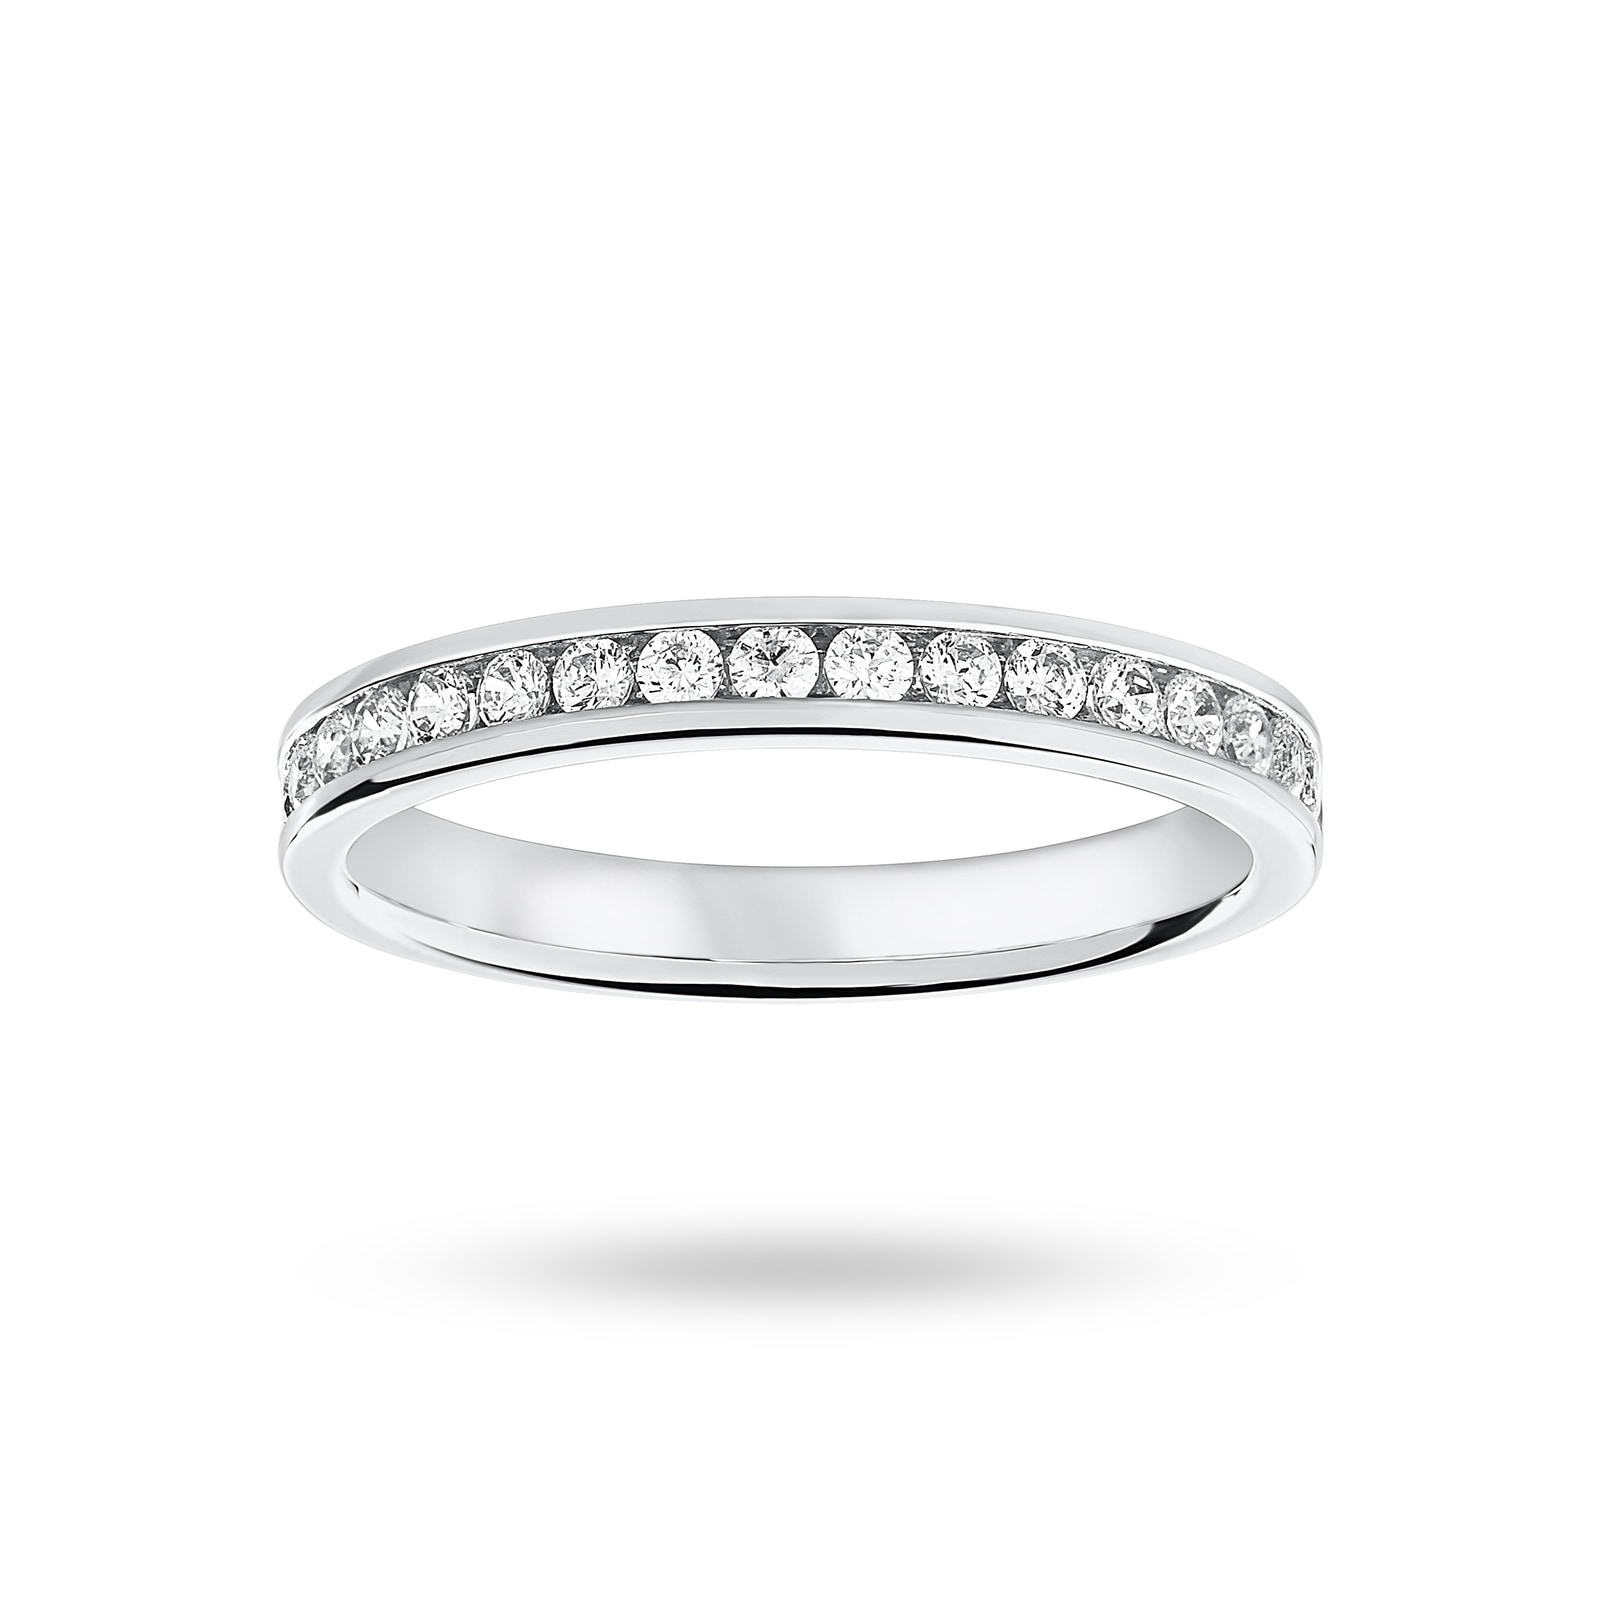 Platinum 0.33 Carat Brilliant Cut Half Eternity Ring - Ring Size M